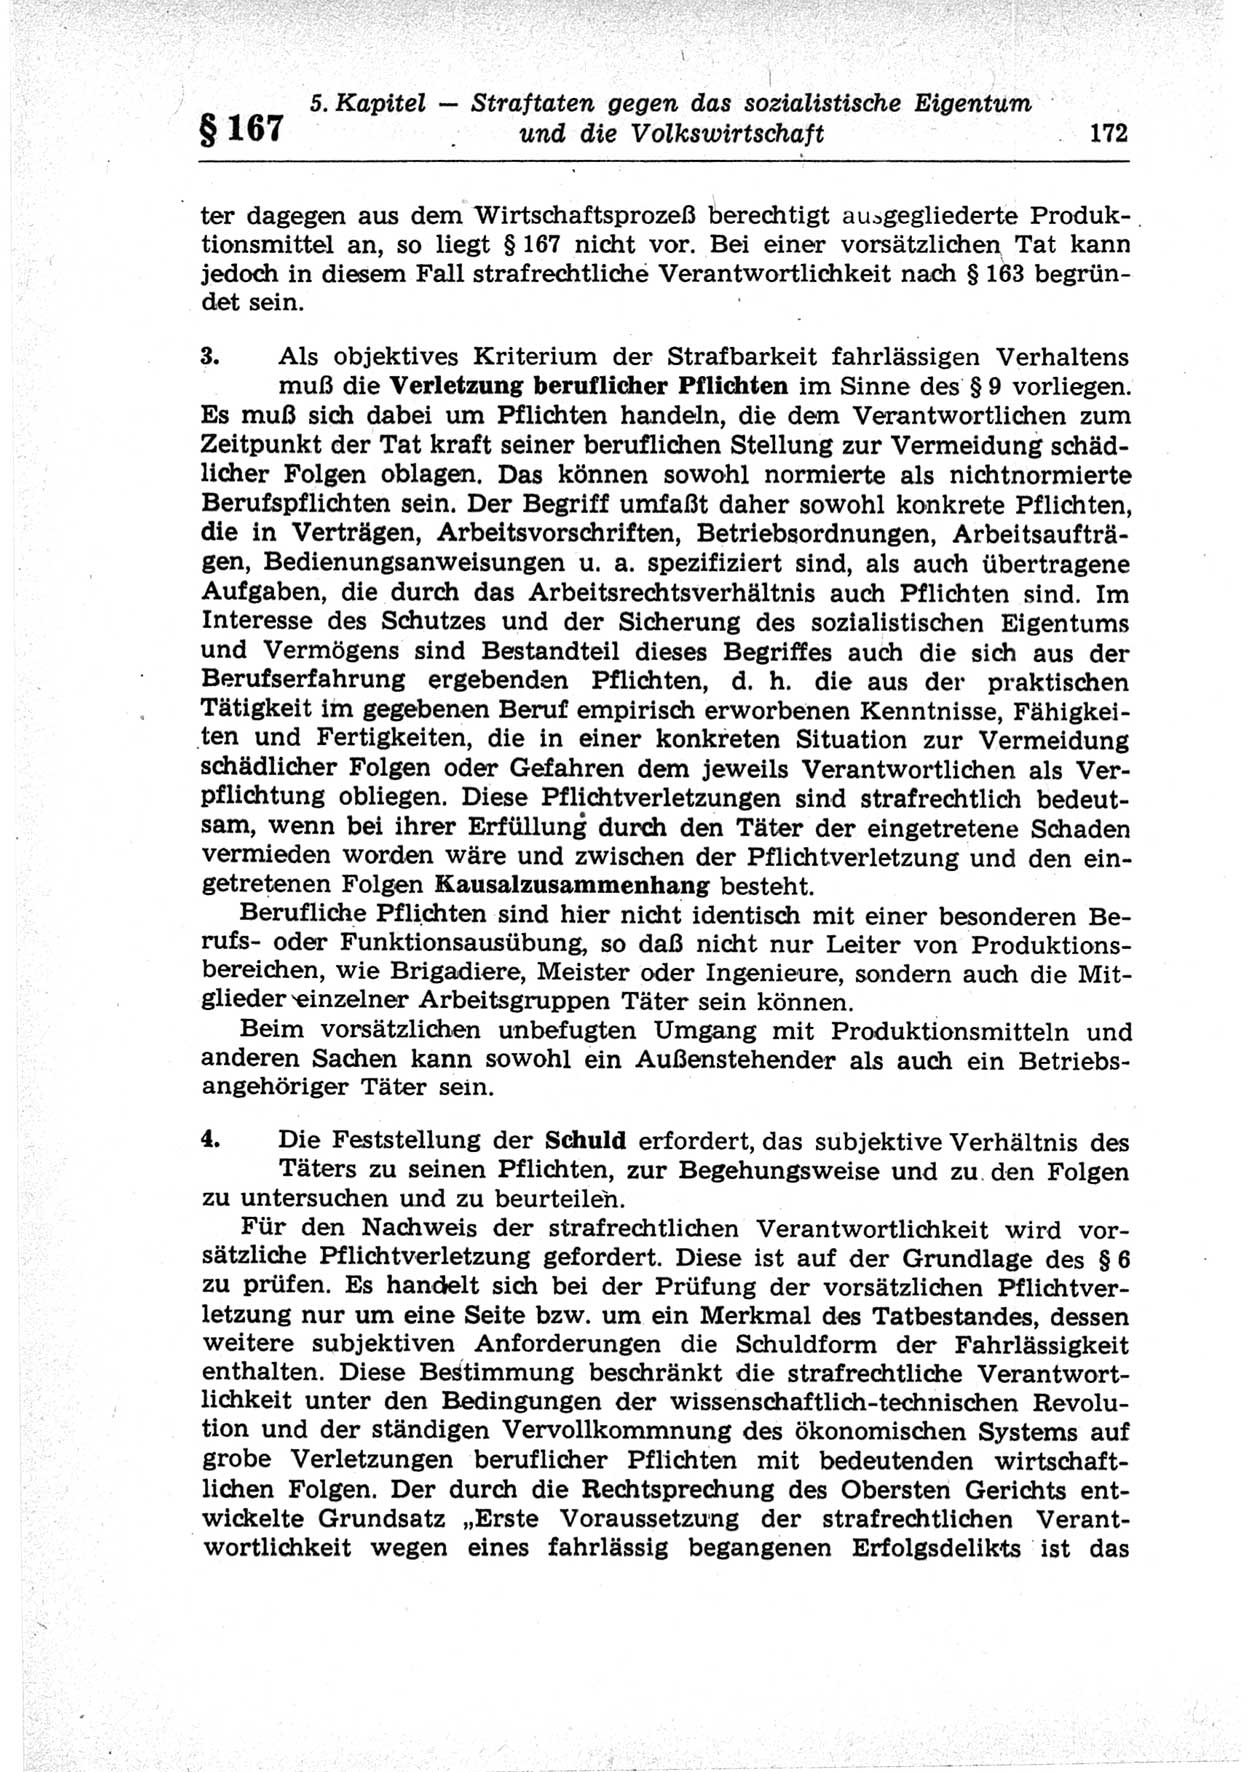 Strafrecht der Deutschen Demokratischen Republik (DDR), Lehrkommentar zum Strafgesetzbuch (StGB), Besonderer Teil 1969, Seite 172 (Strafr. DDR Lehrkomm. StGB BT 1969, S. 172)